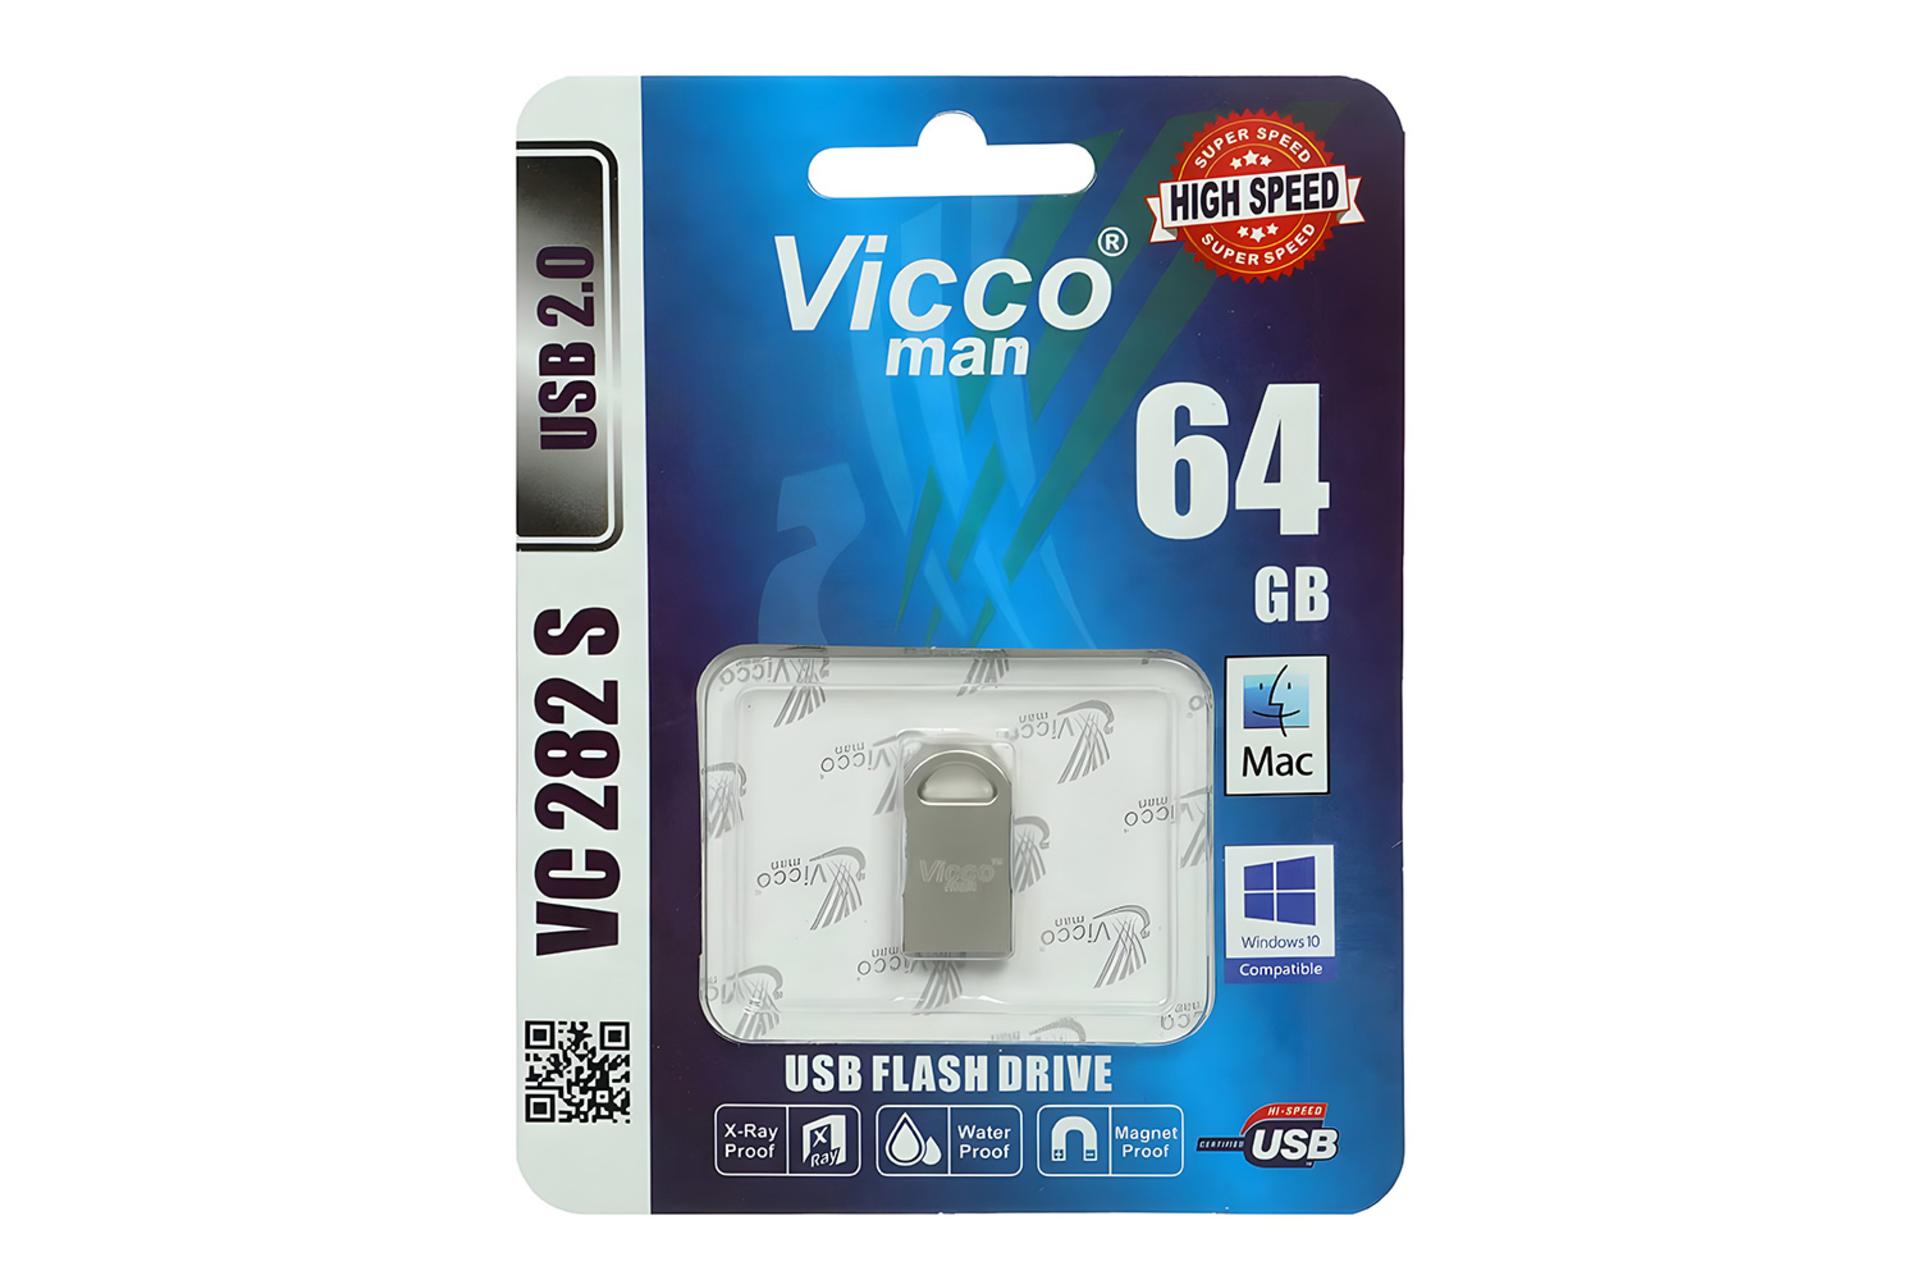 جعبه فلش مموری ویکومن Viccoman VC282 S 64GB USB 2.0